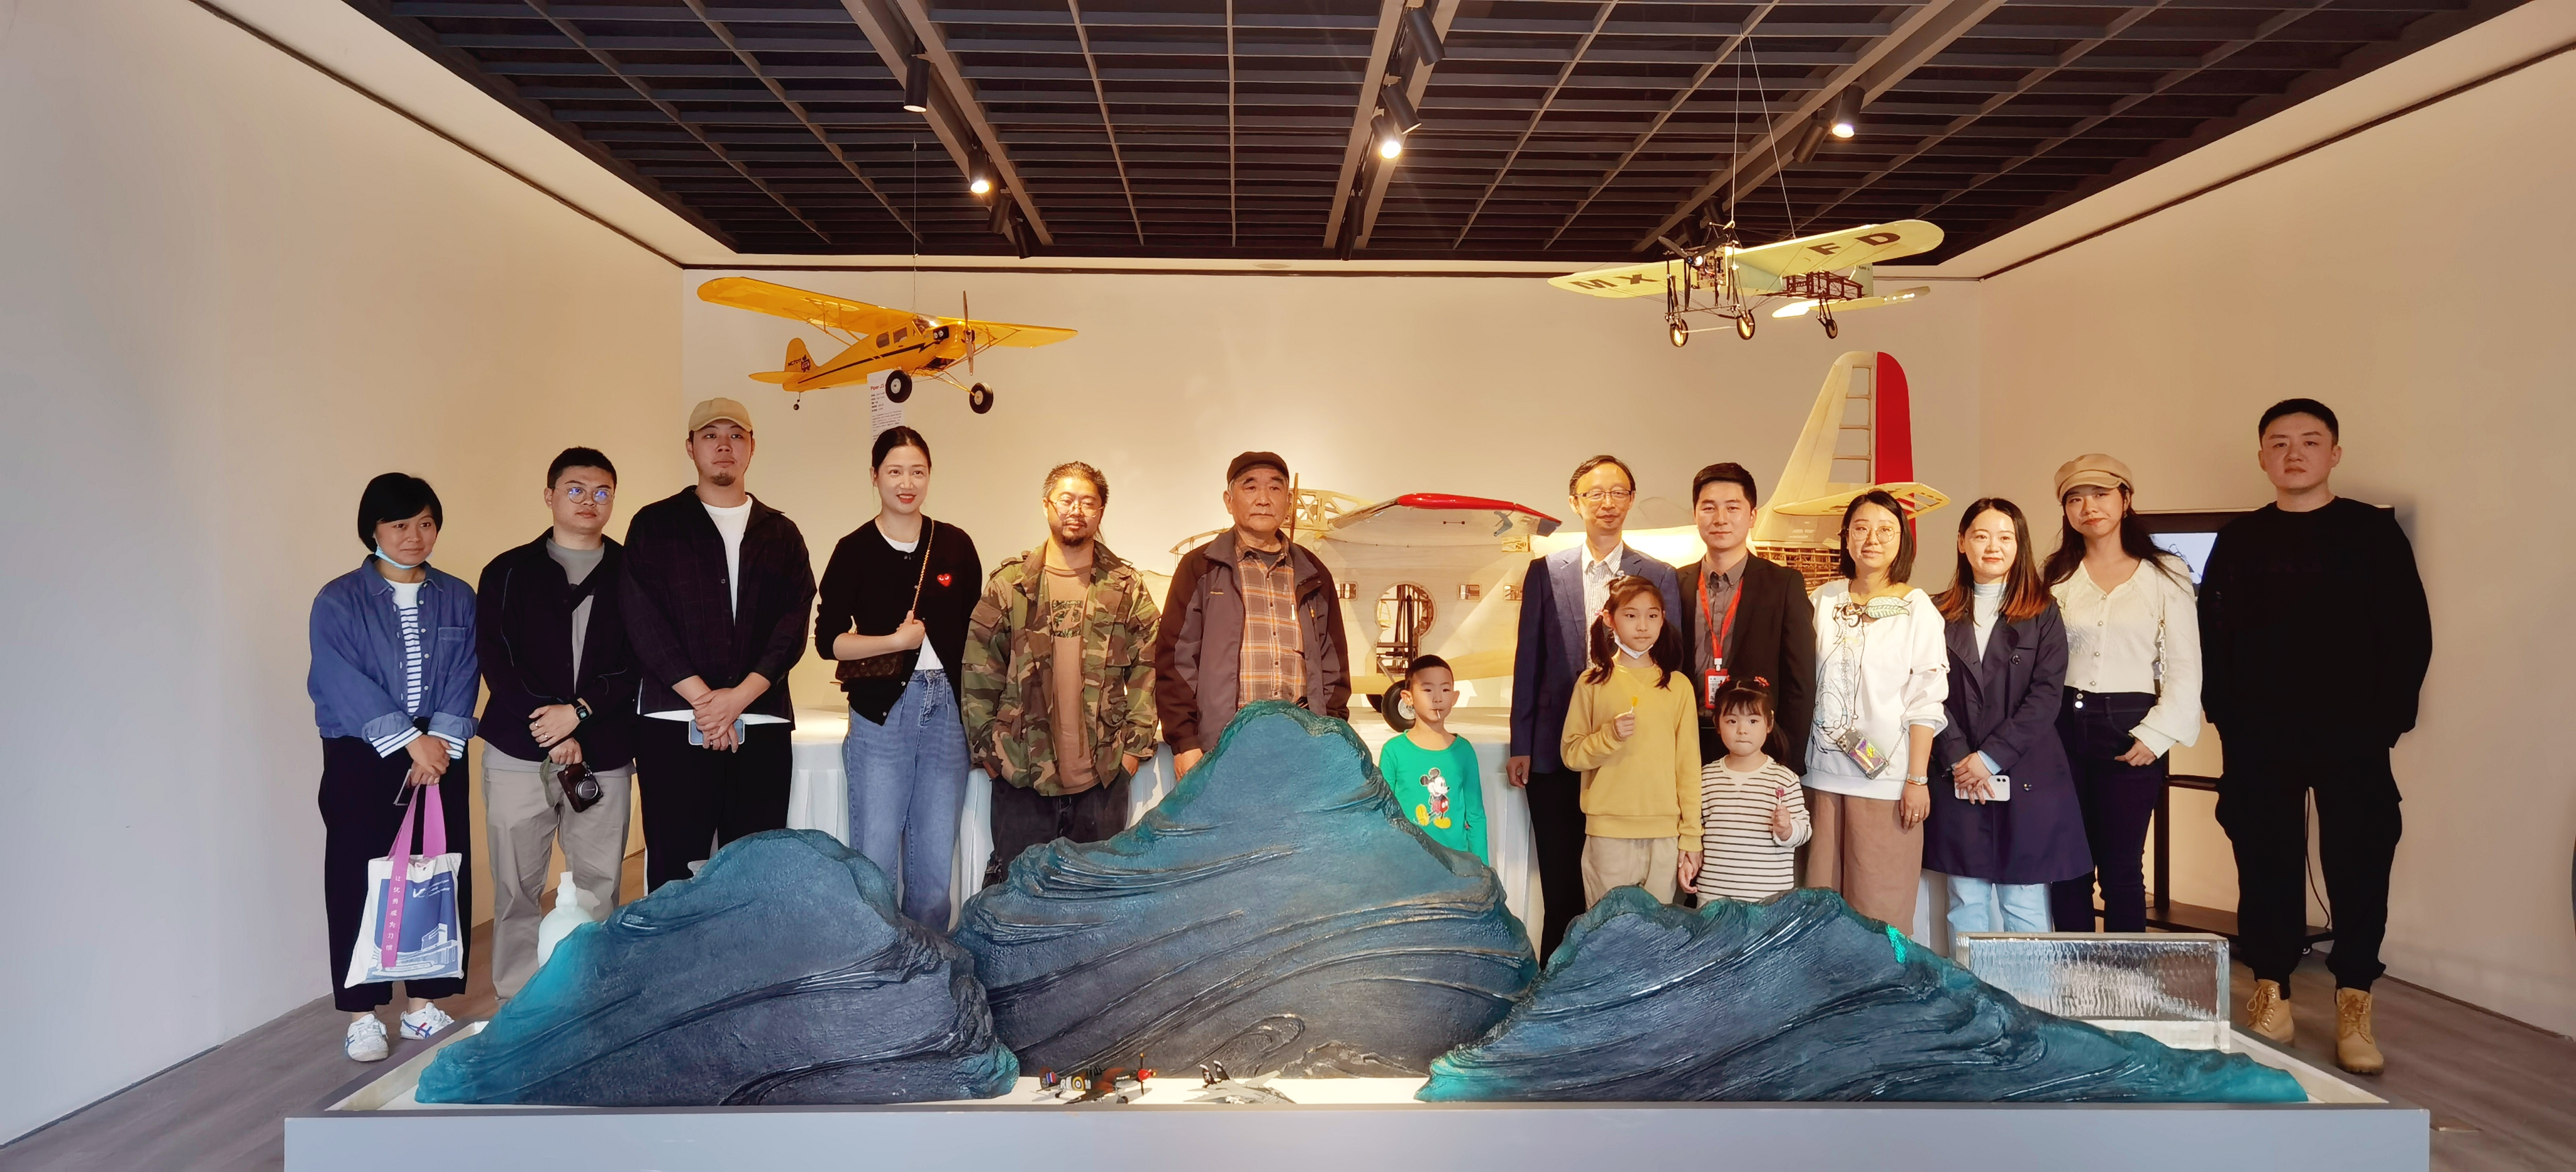 通过飞机模型展览的形式，集中展示了30余架飞机模型。